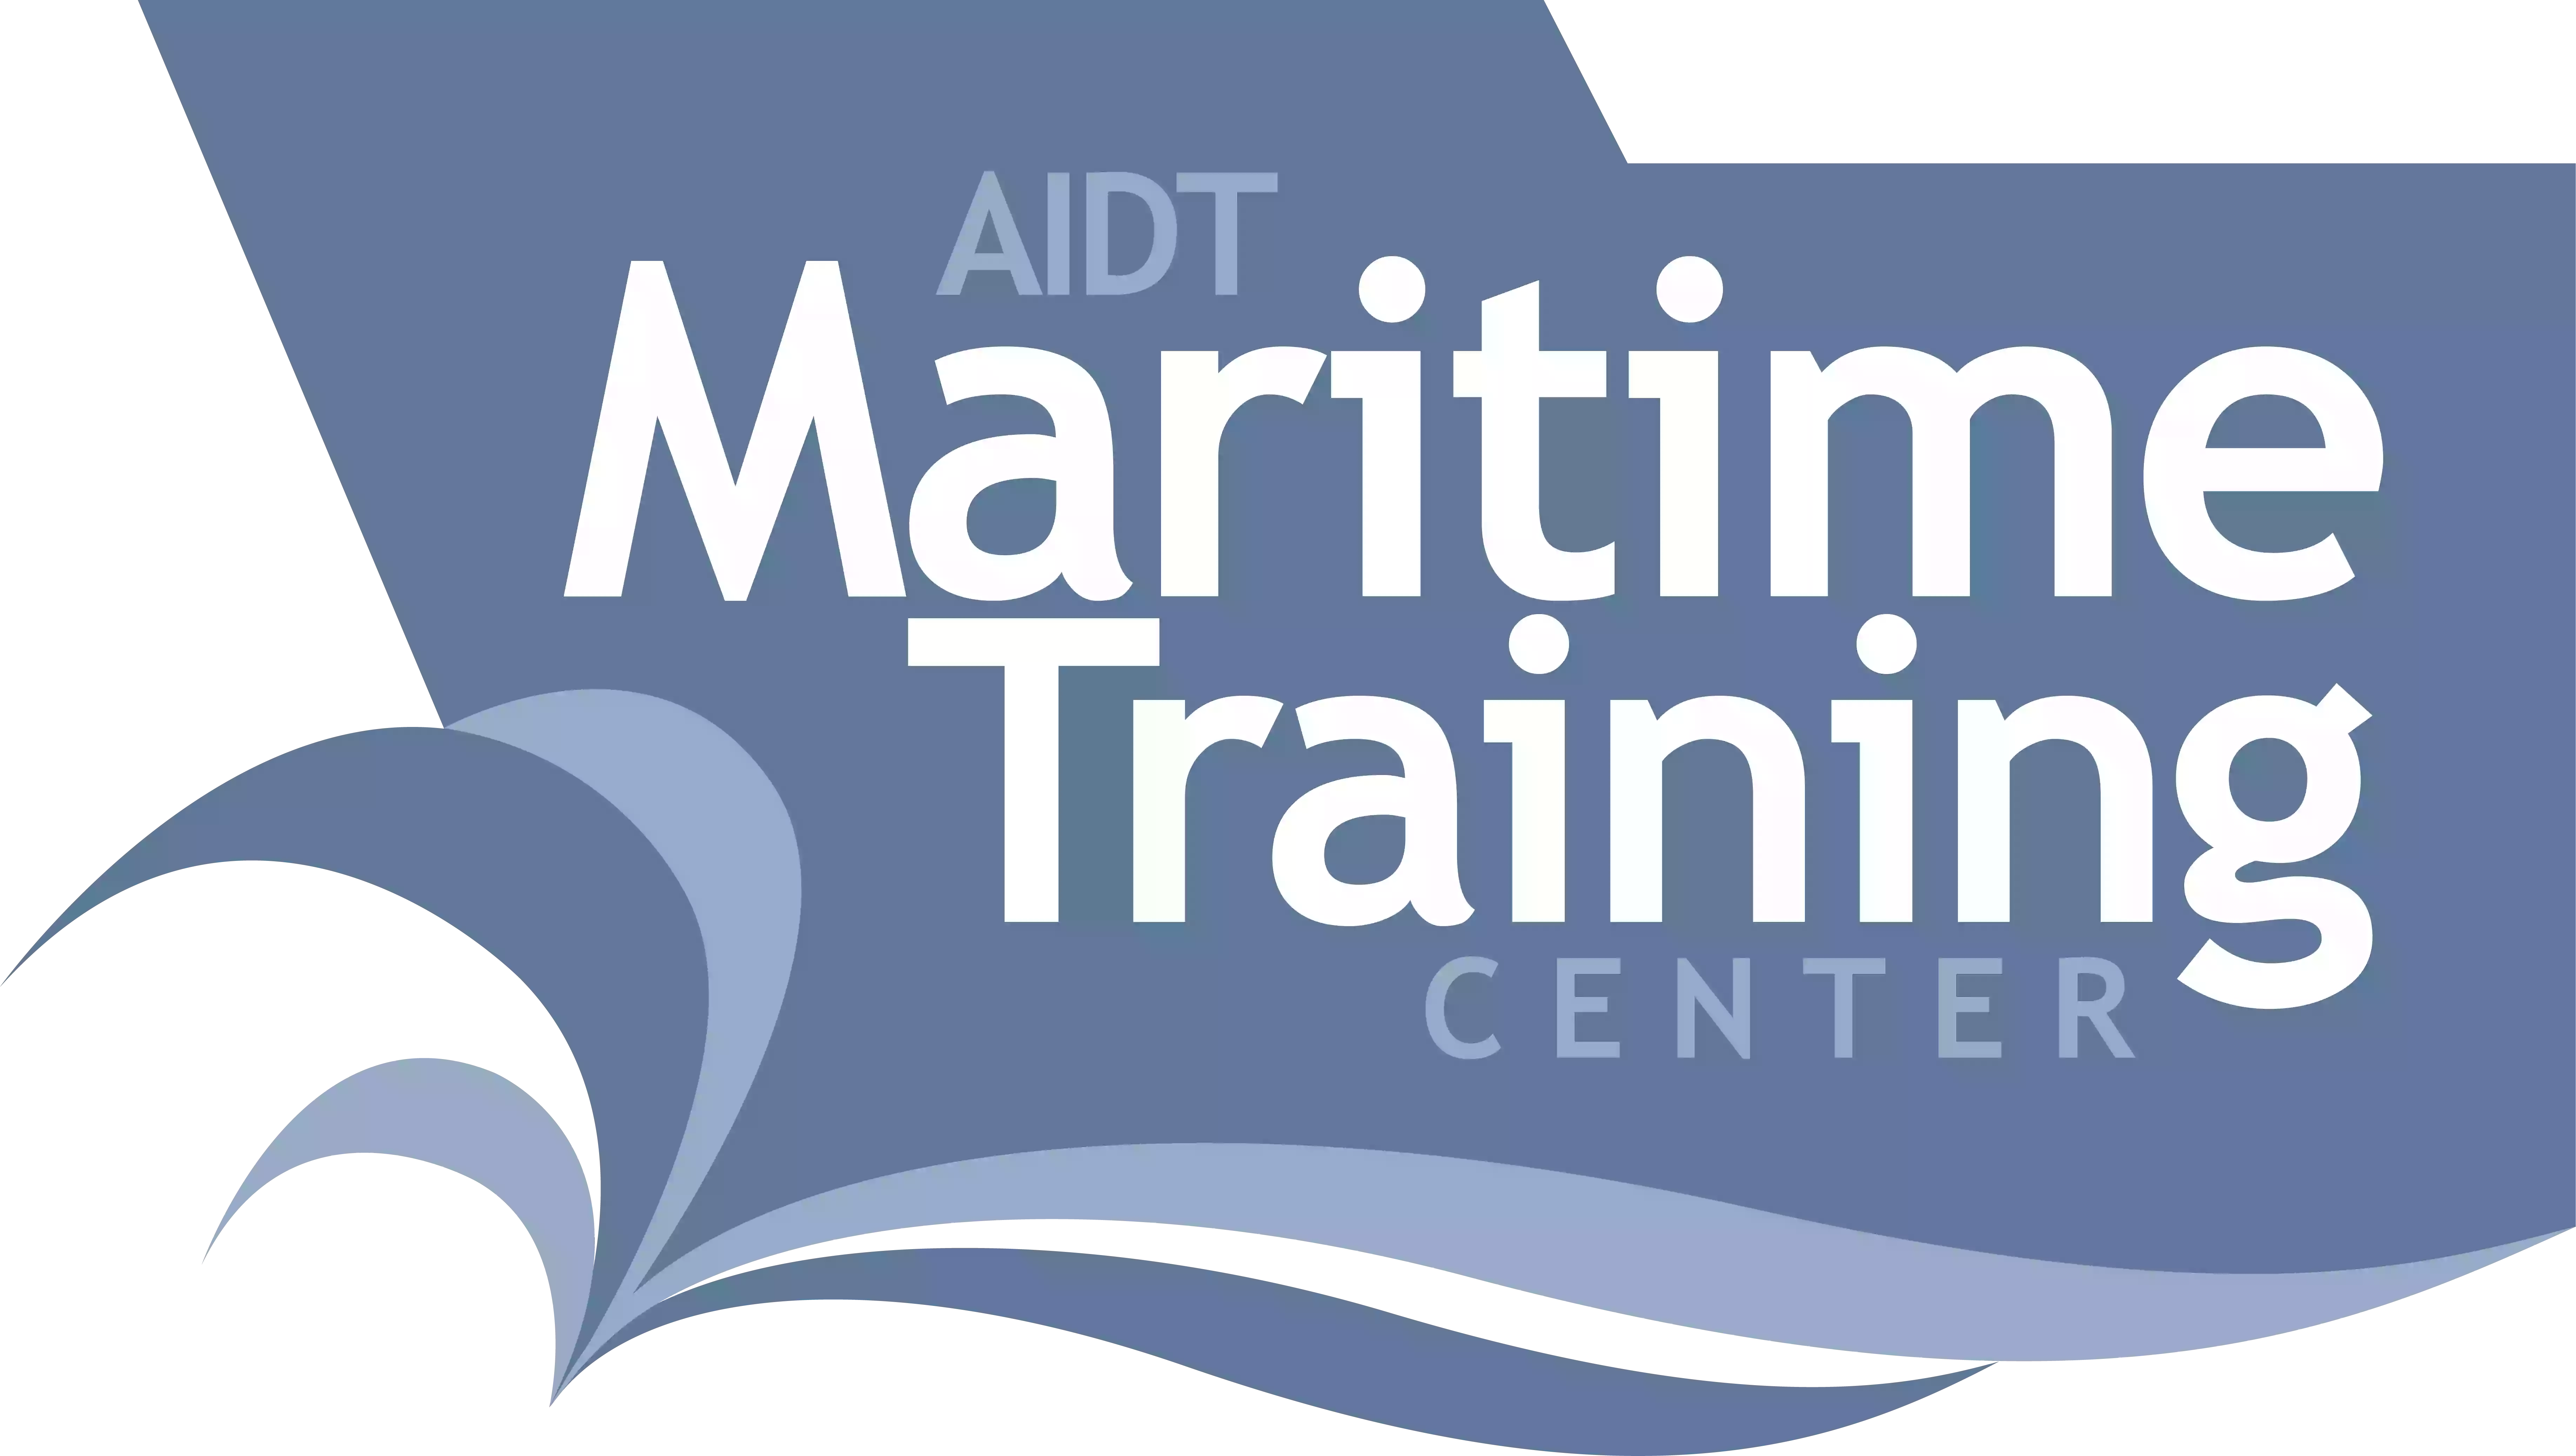 AIDT Maritime Training Center